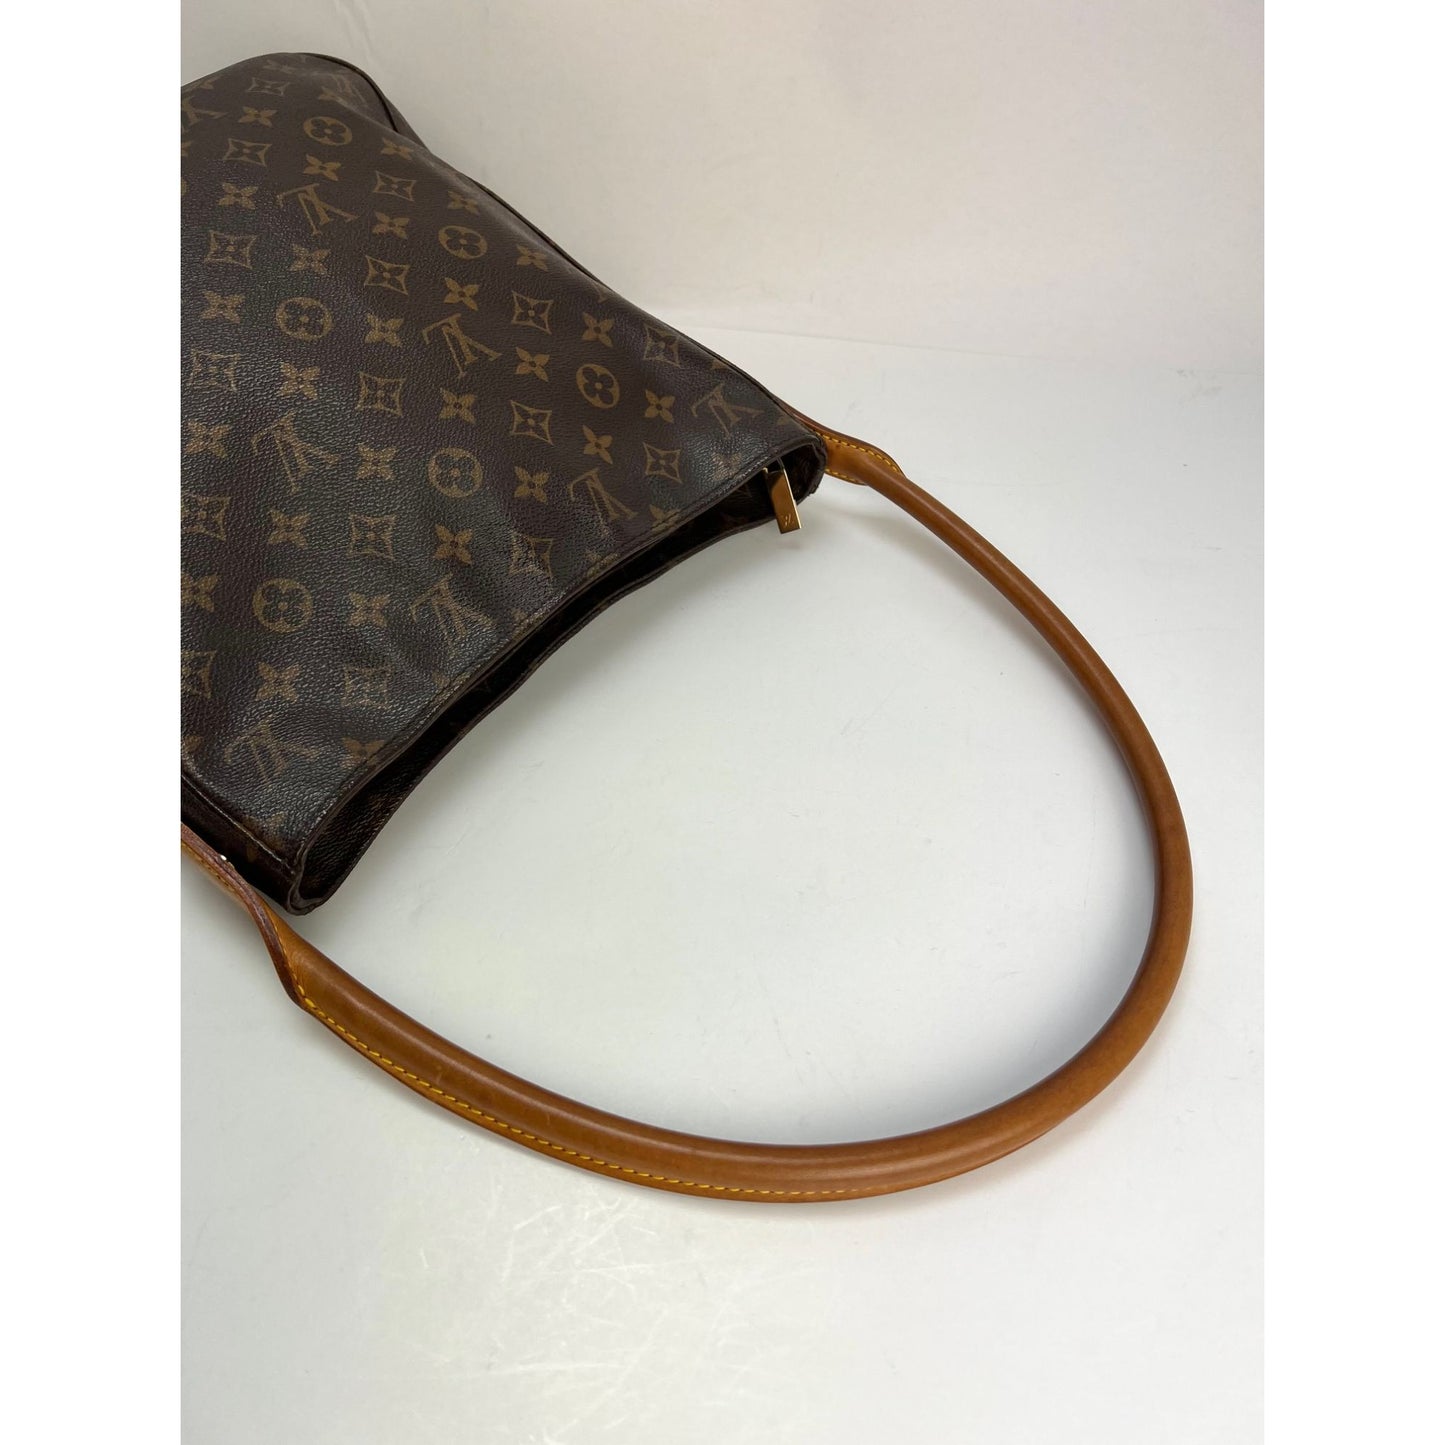 Brown Louis Vuitton Monogram Looping GM Shoulder Bag – Designer Revival